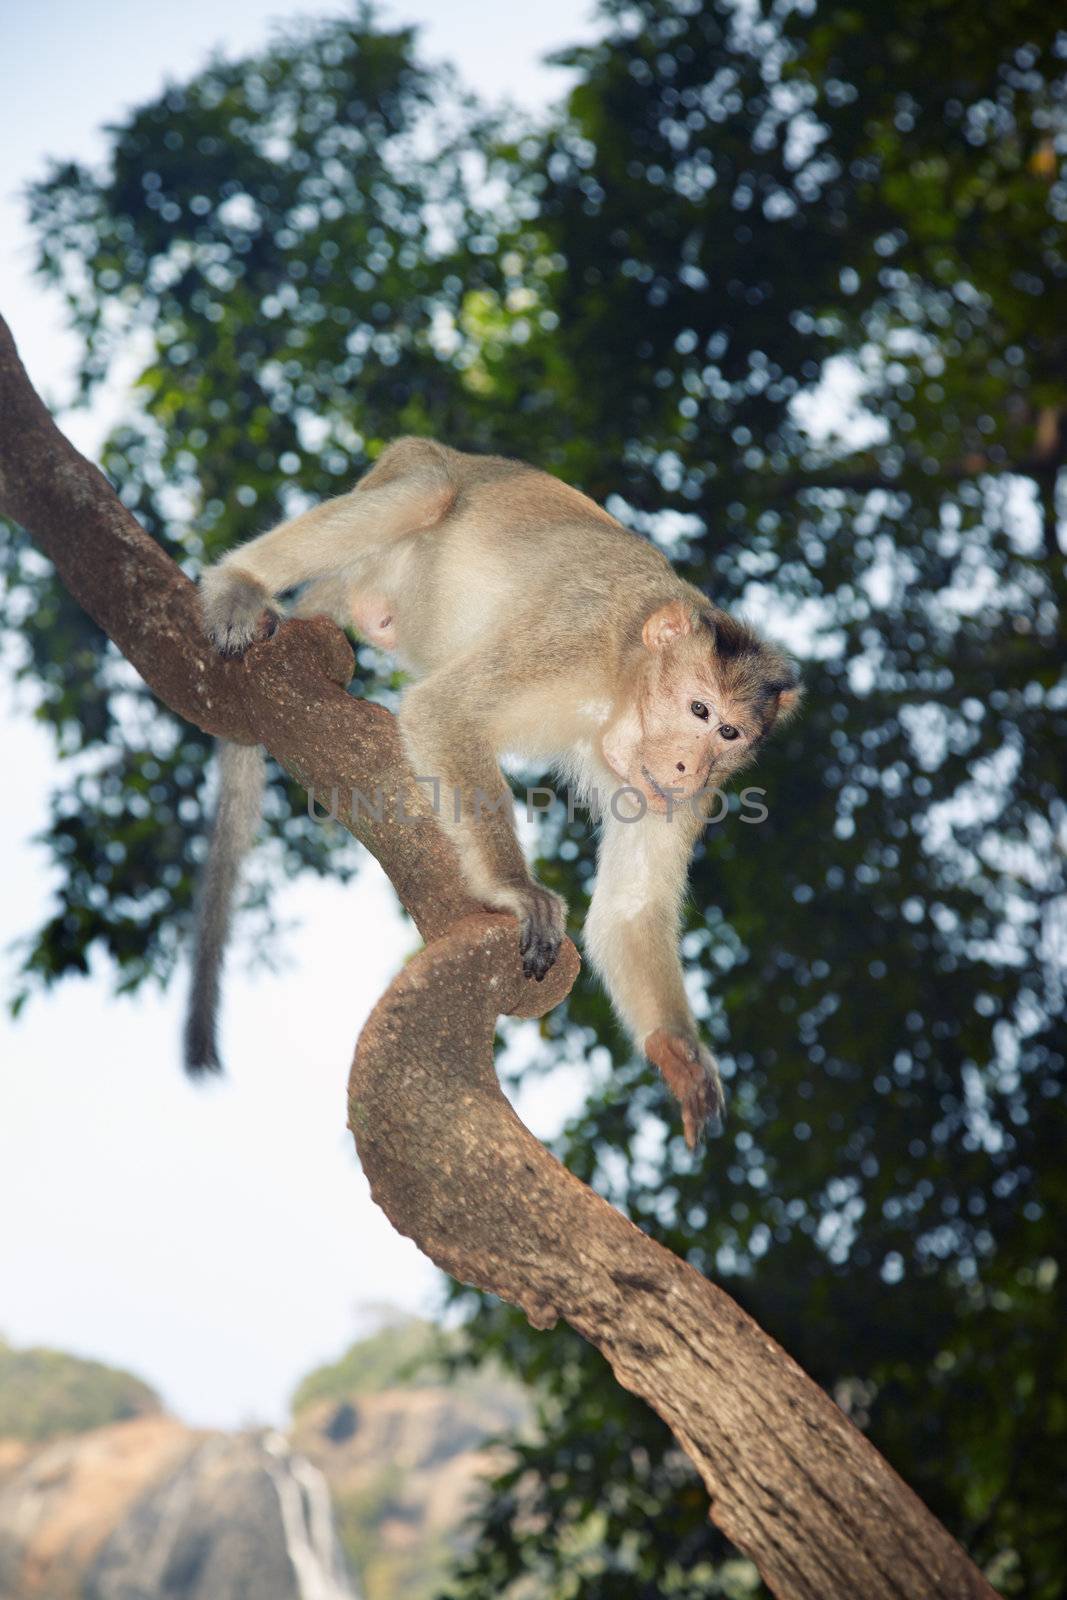 Wild monkey scrambling in jungles. Close-up vertical photo